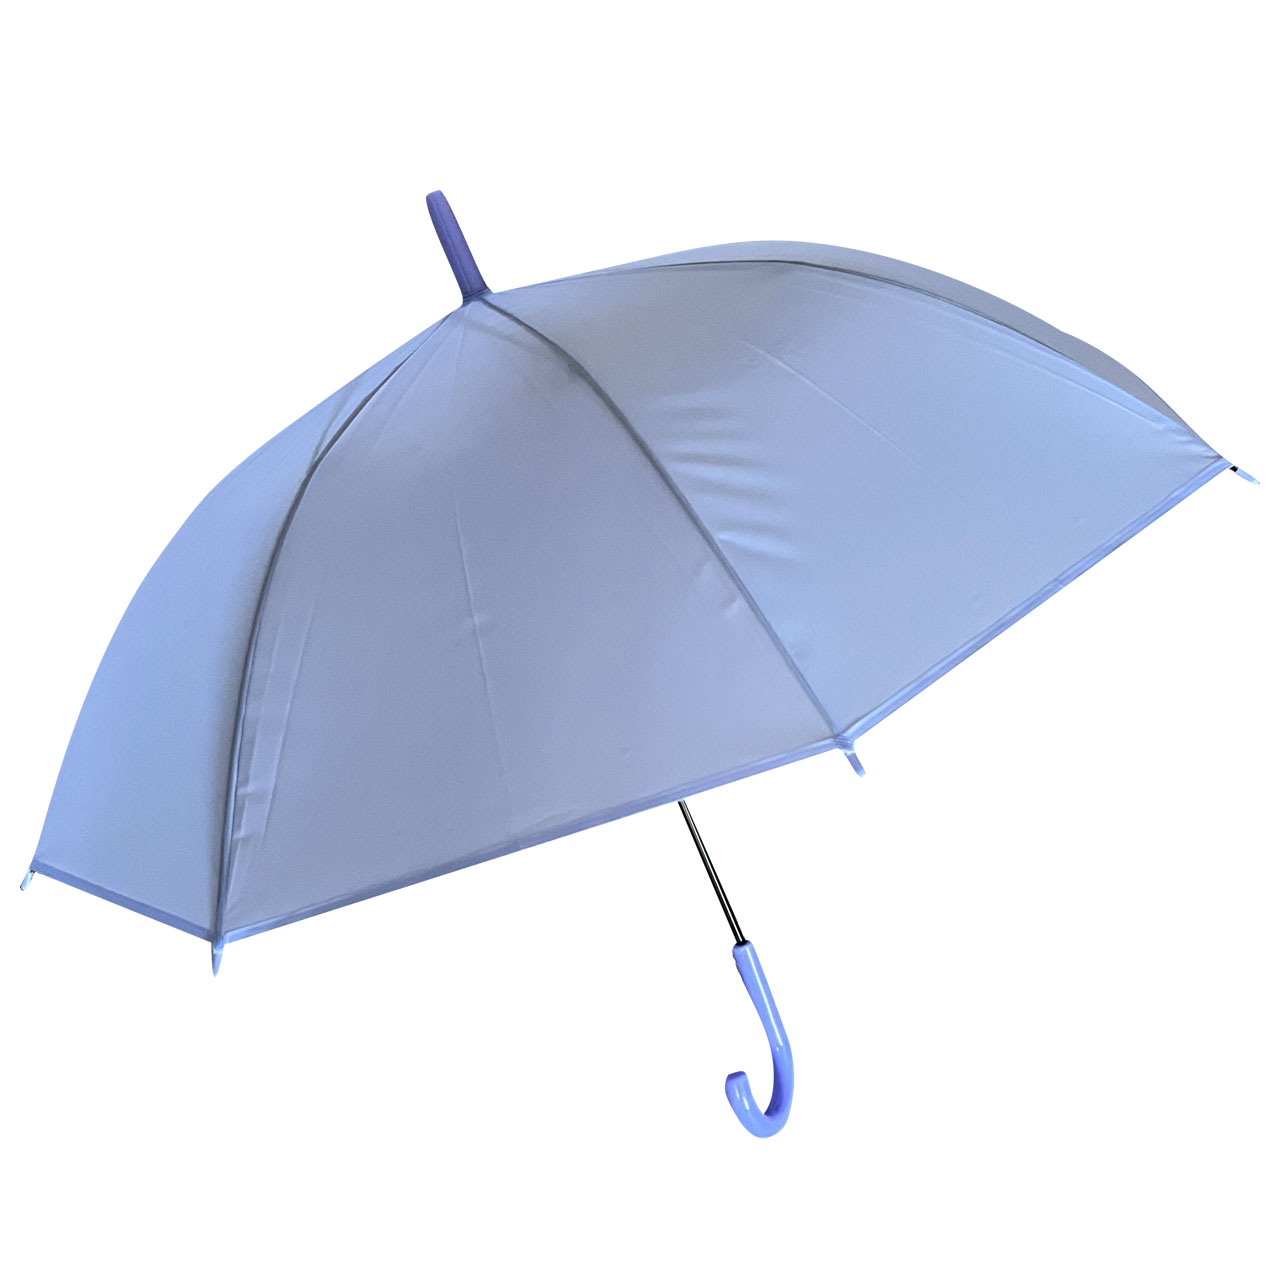  چتر بچگانه کد 879